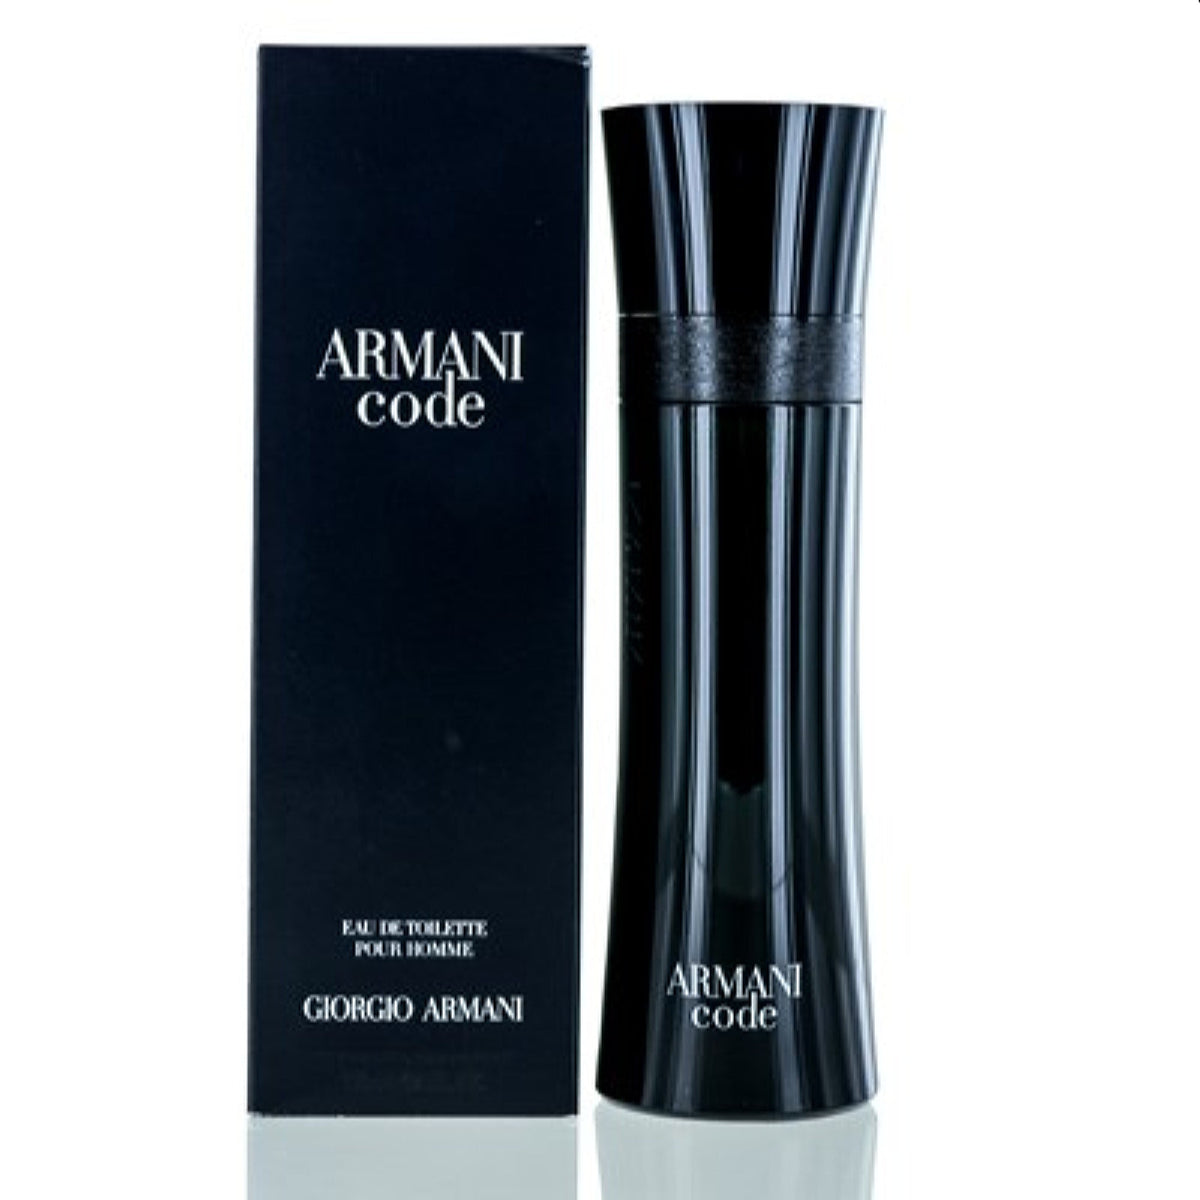 Armani Code Giorgio Armani Edt Spray 4.2 Oz For Men 1670893